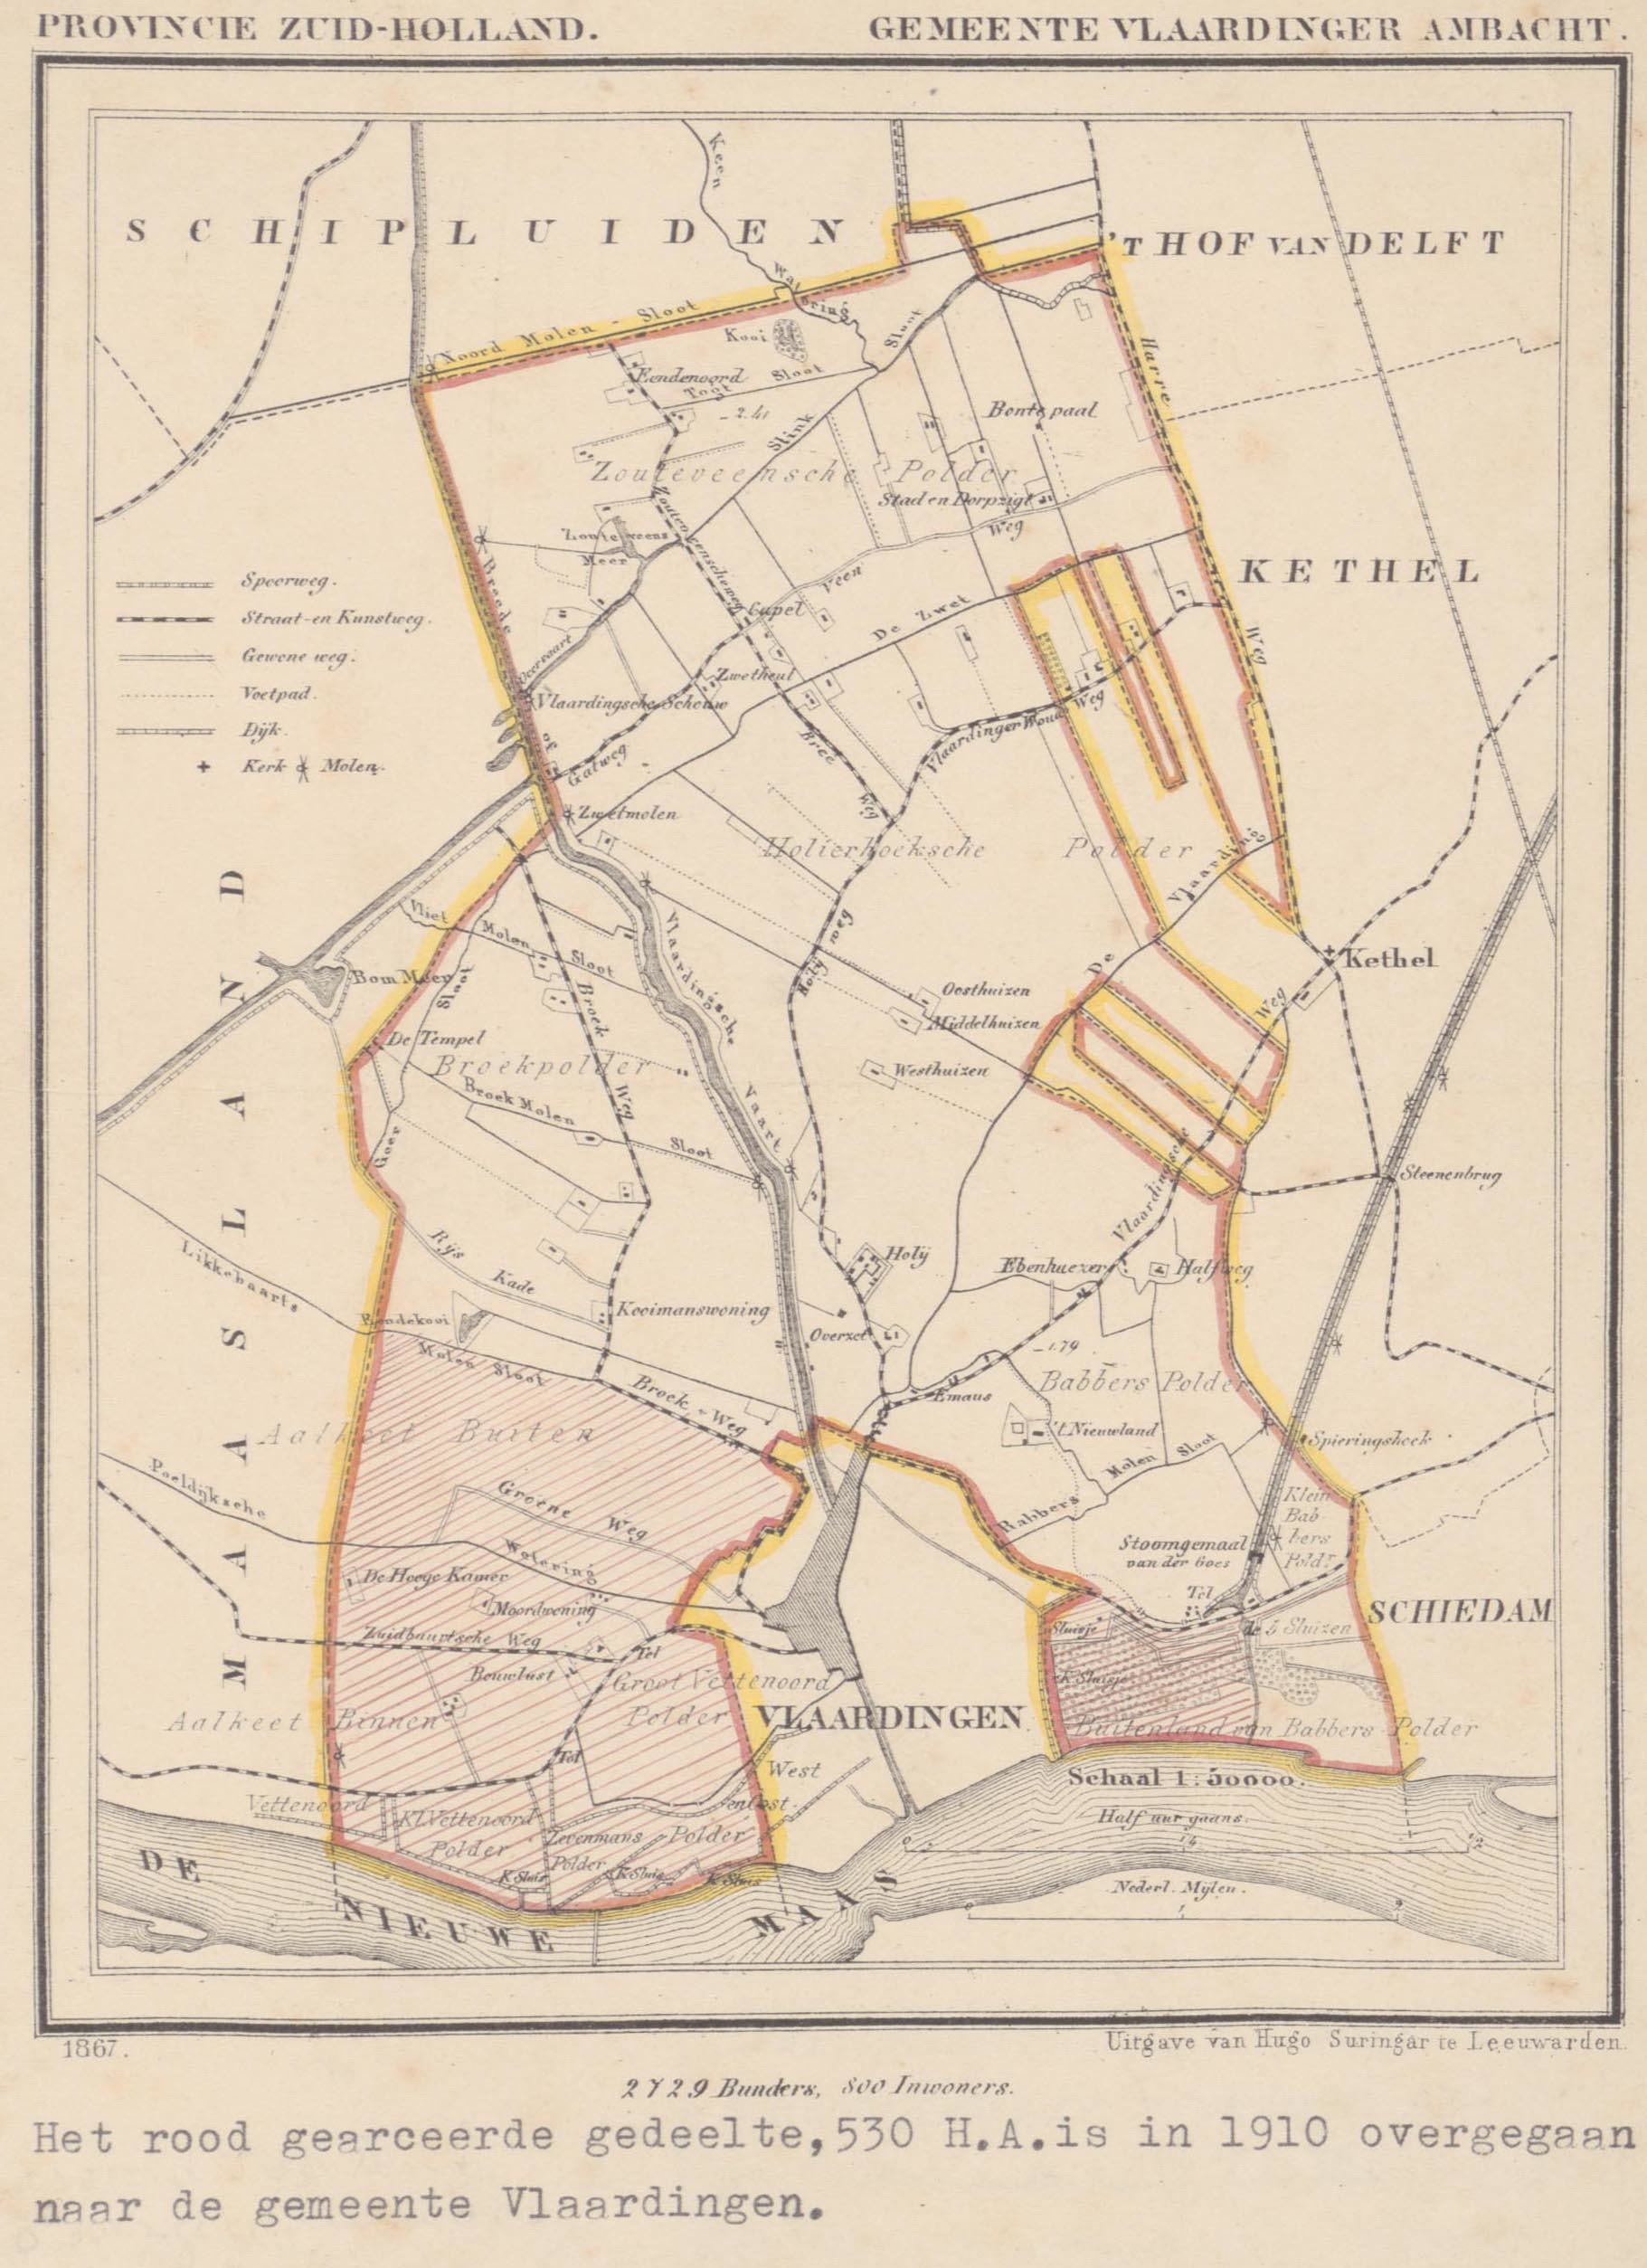 Kaart Provincie Zuid-Holland van 1867. Het rood gearceerde deel is in 1910 overgegaan naar de gemeente Vlaardingen. Collectie Stadsarchief Vlaardingen, KVL0002.